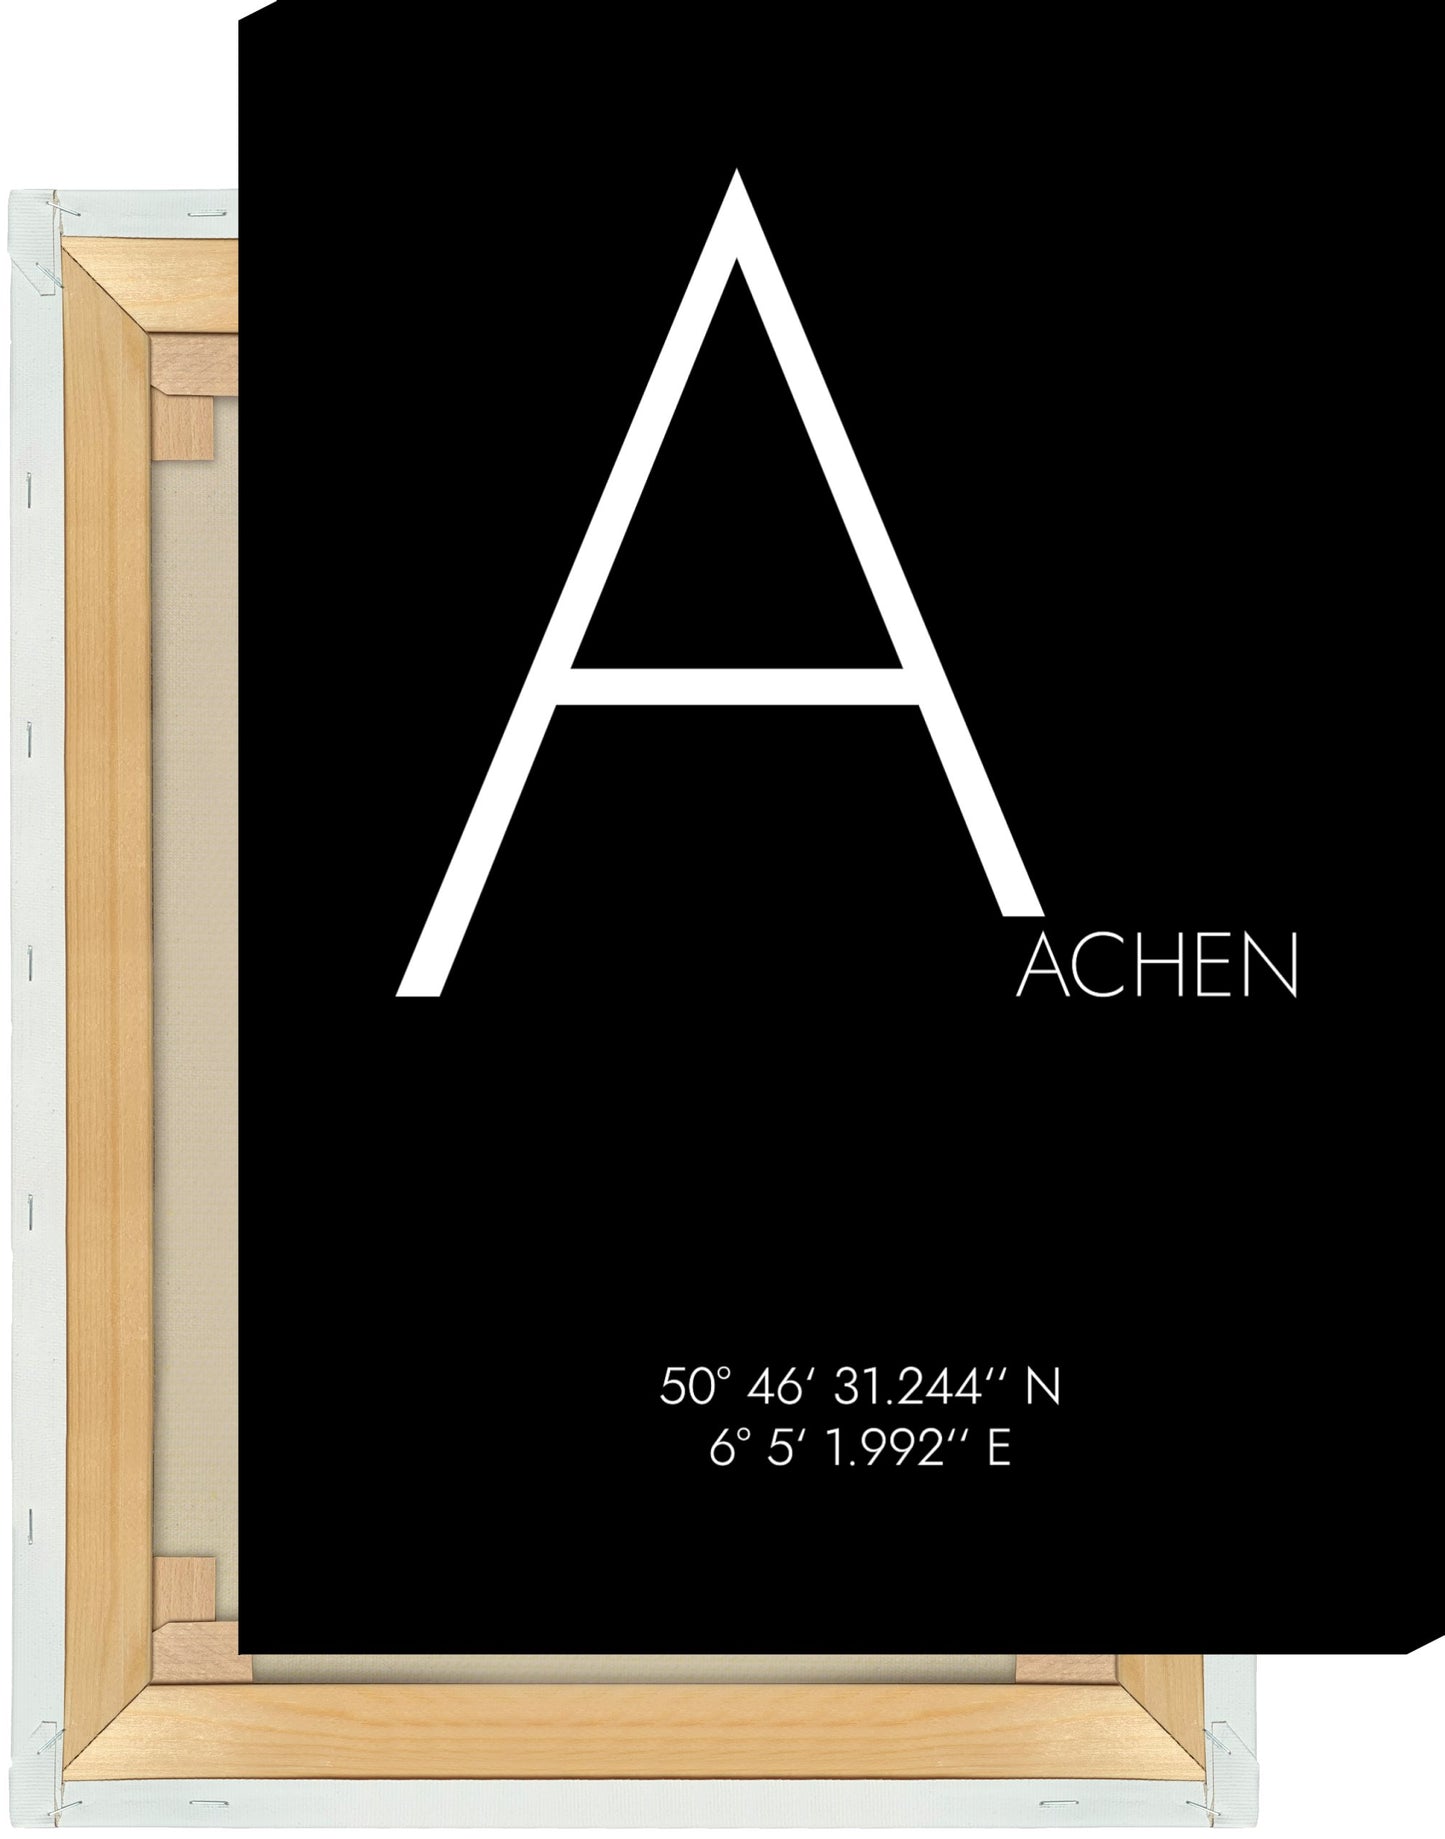 Leinwand Aachen Koordinaten #4